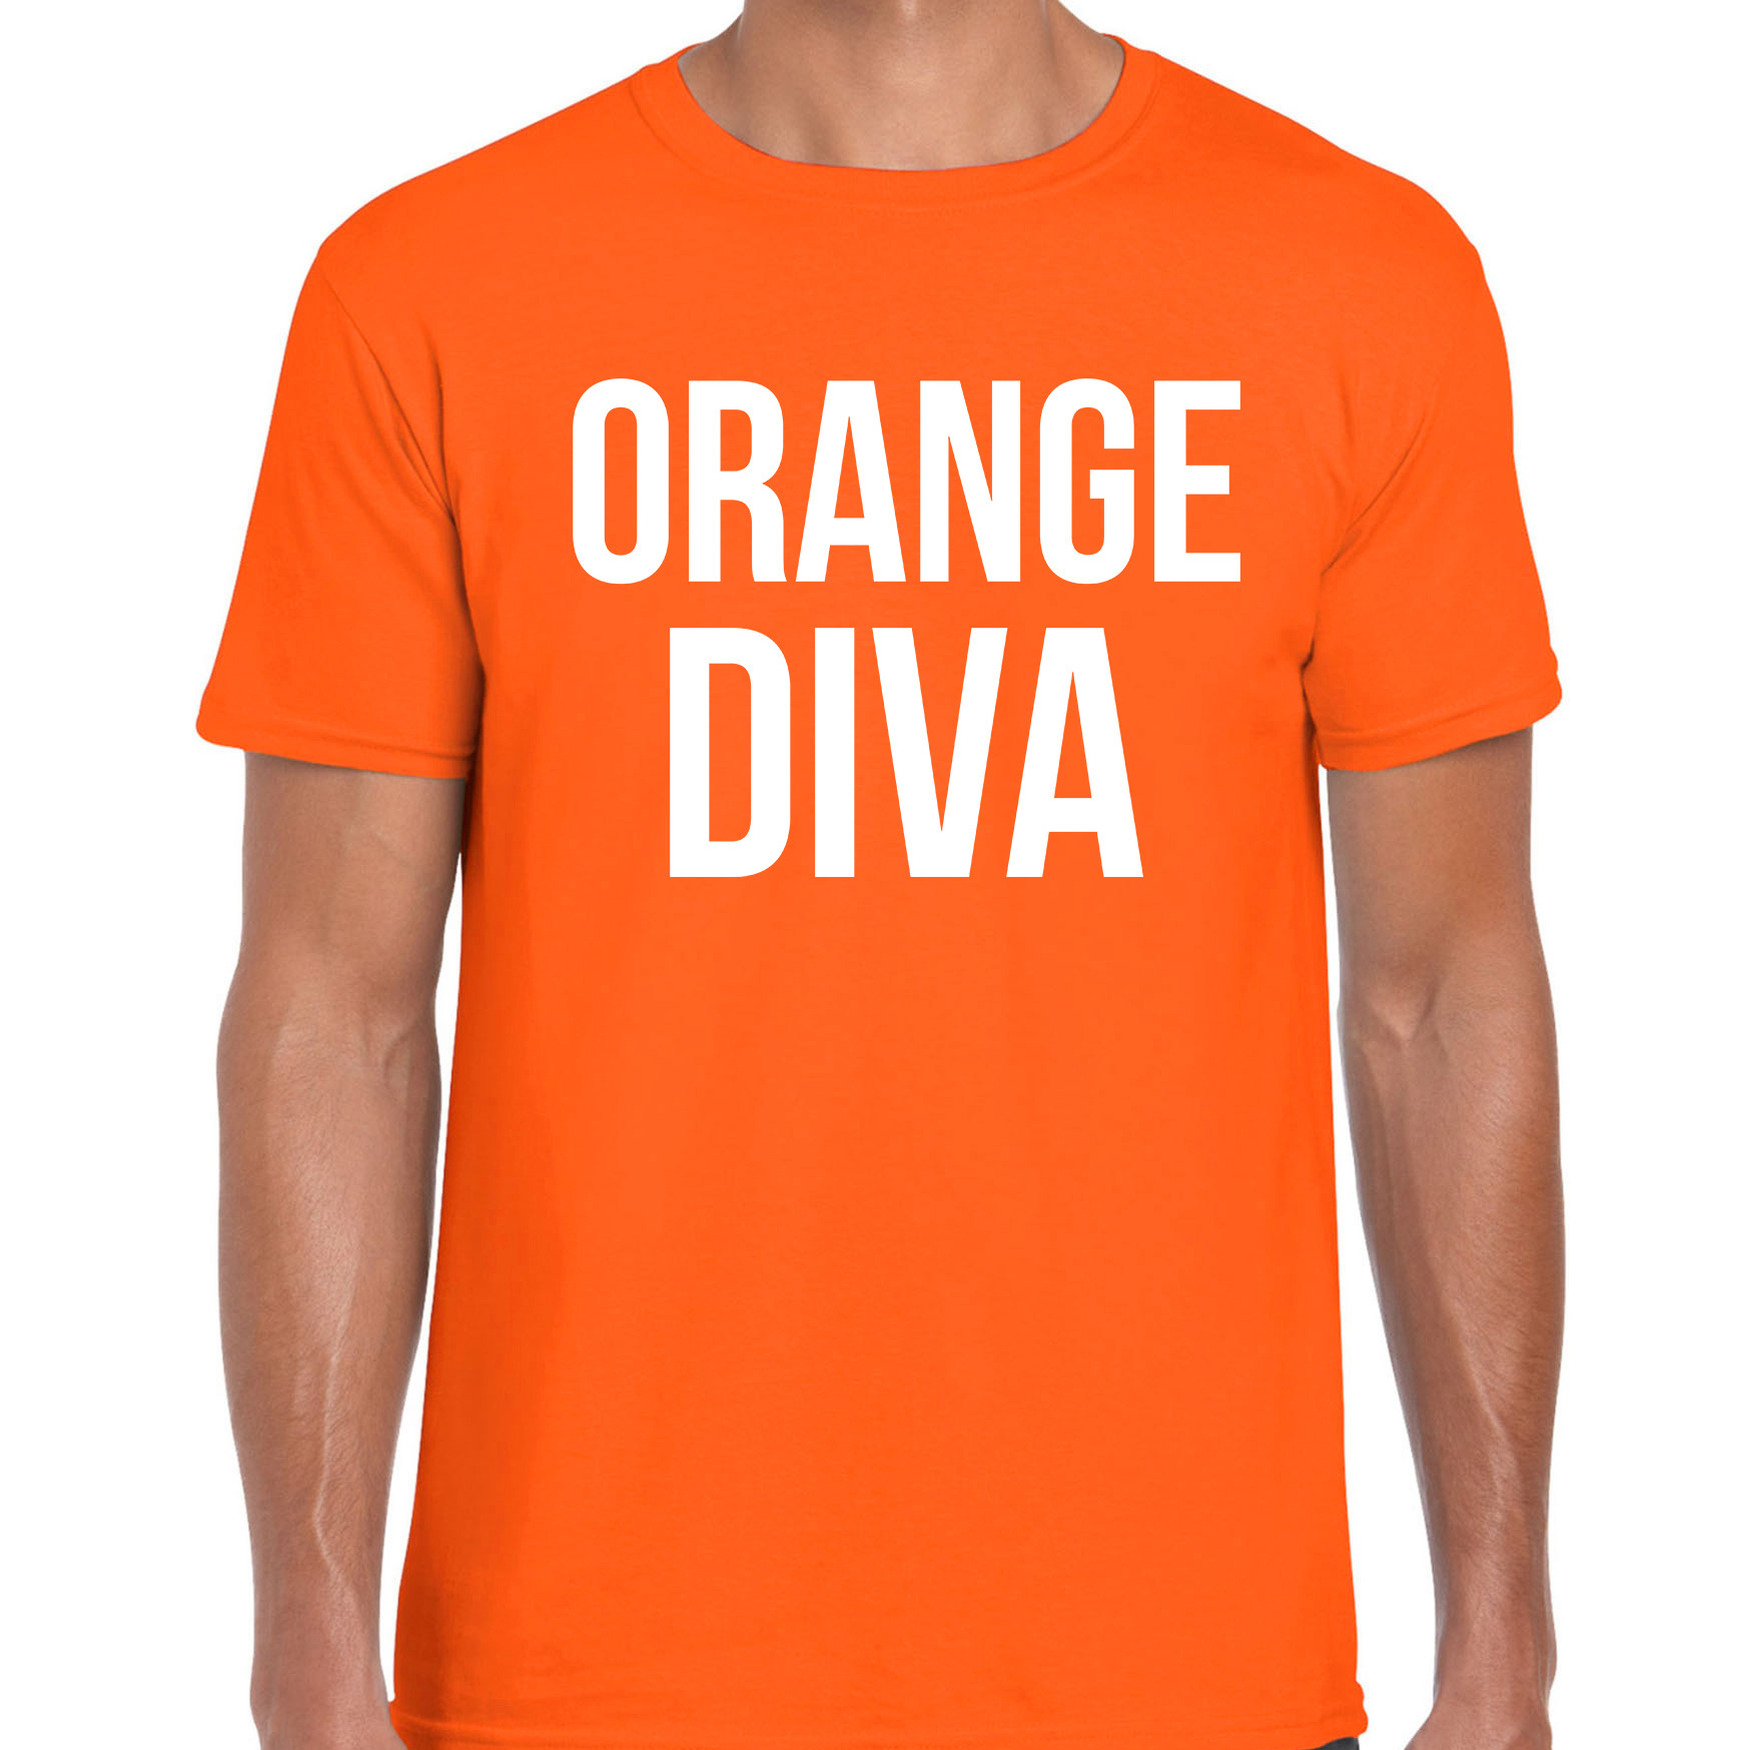 Oranje orange diva shirt Koningsdag t-shirt voor heren